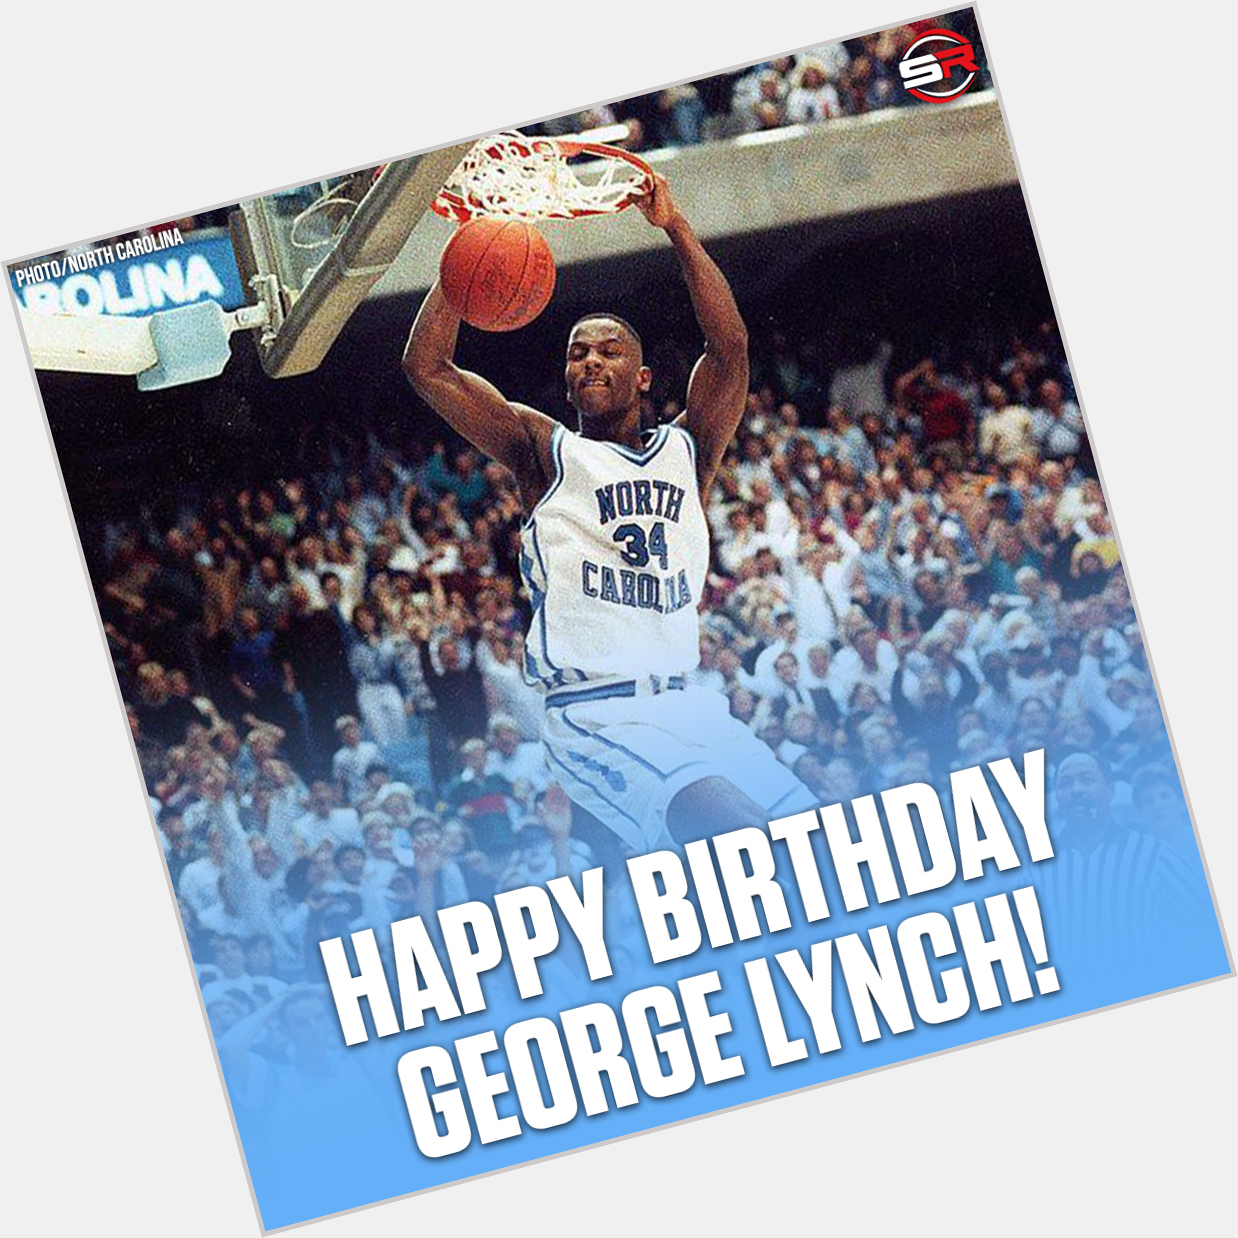 Happy Birthday to Legend, George Lynch! 